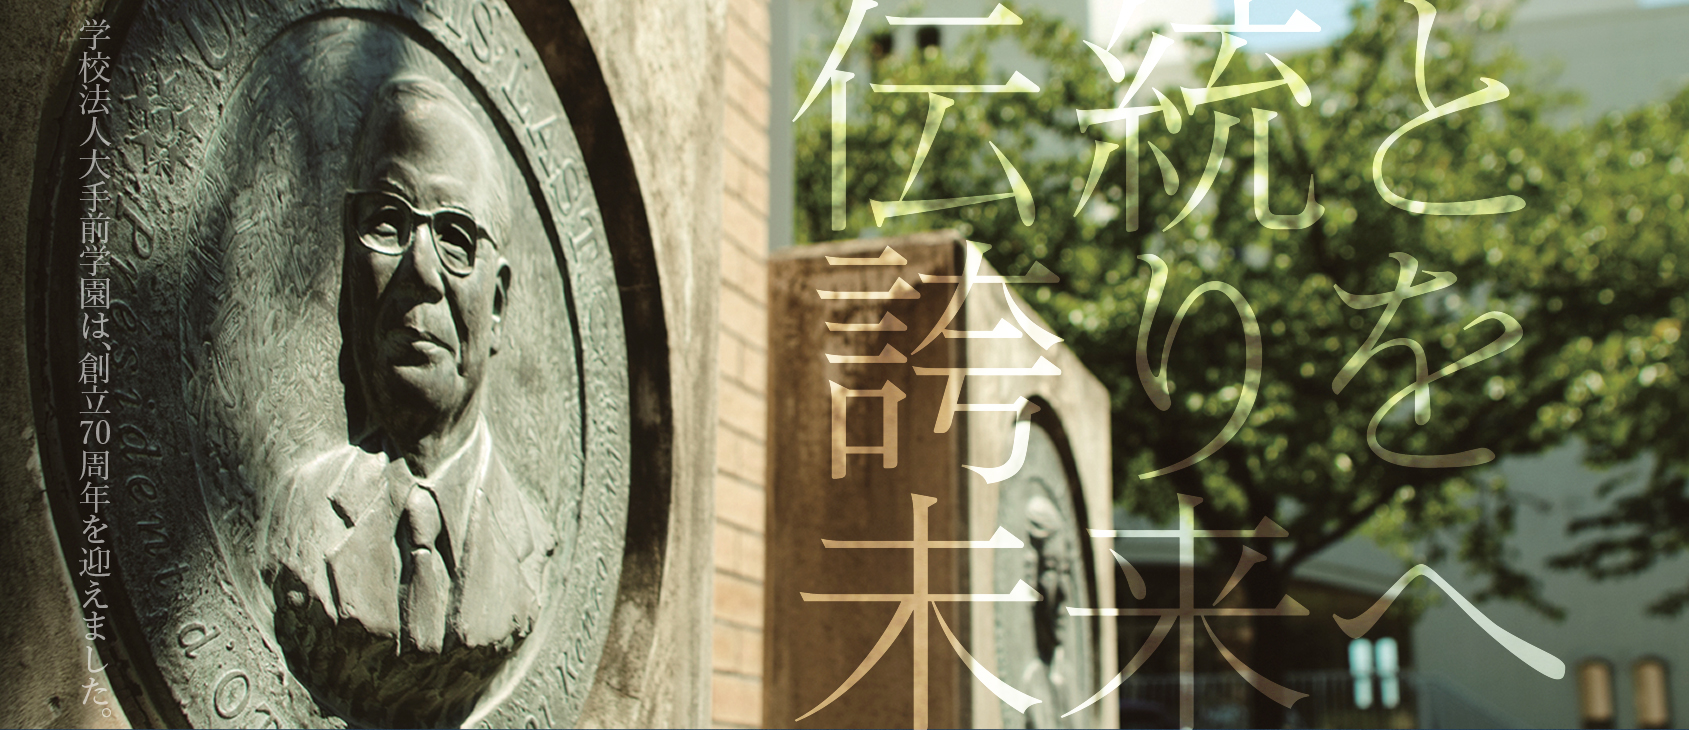 スポーツ ベッティング 日本
学園は、創立70周年を迎えます。